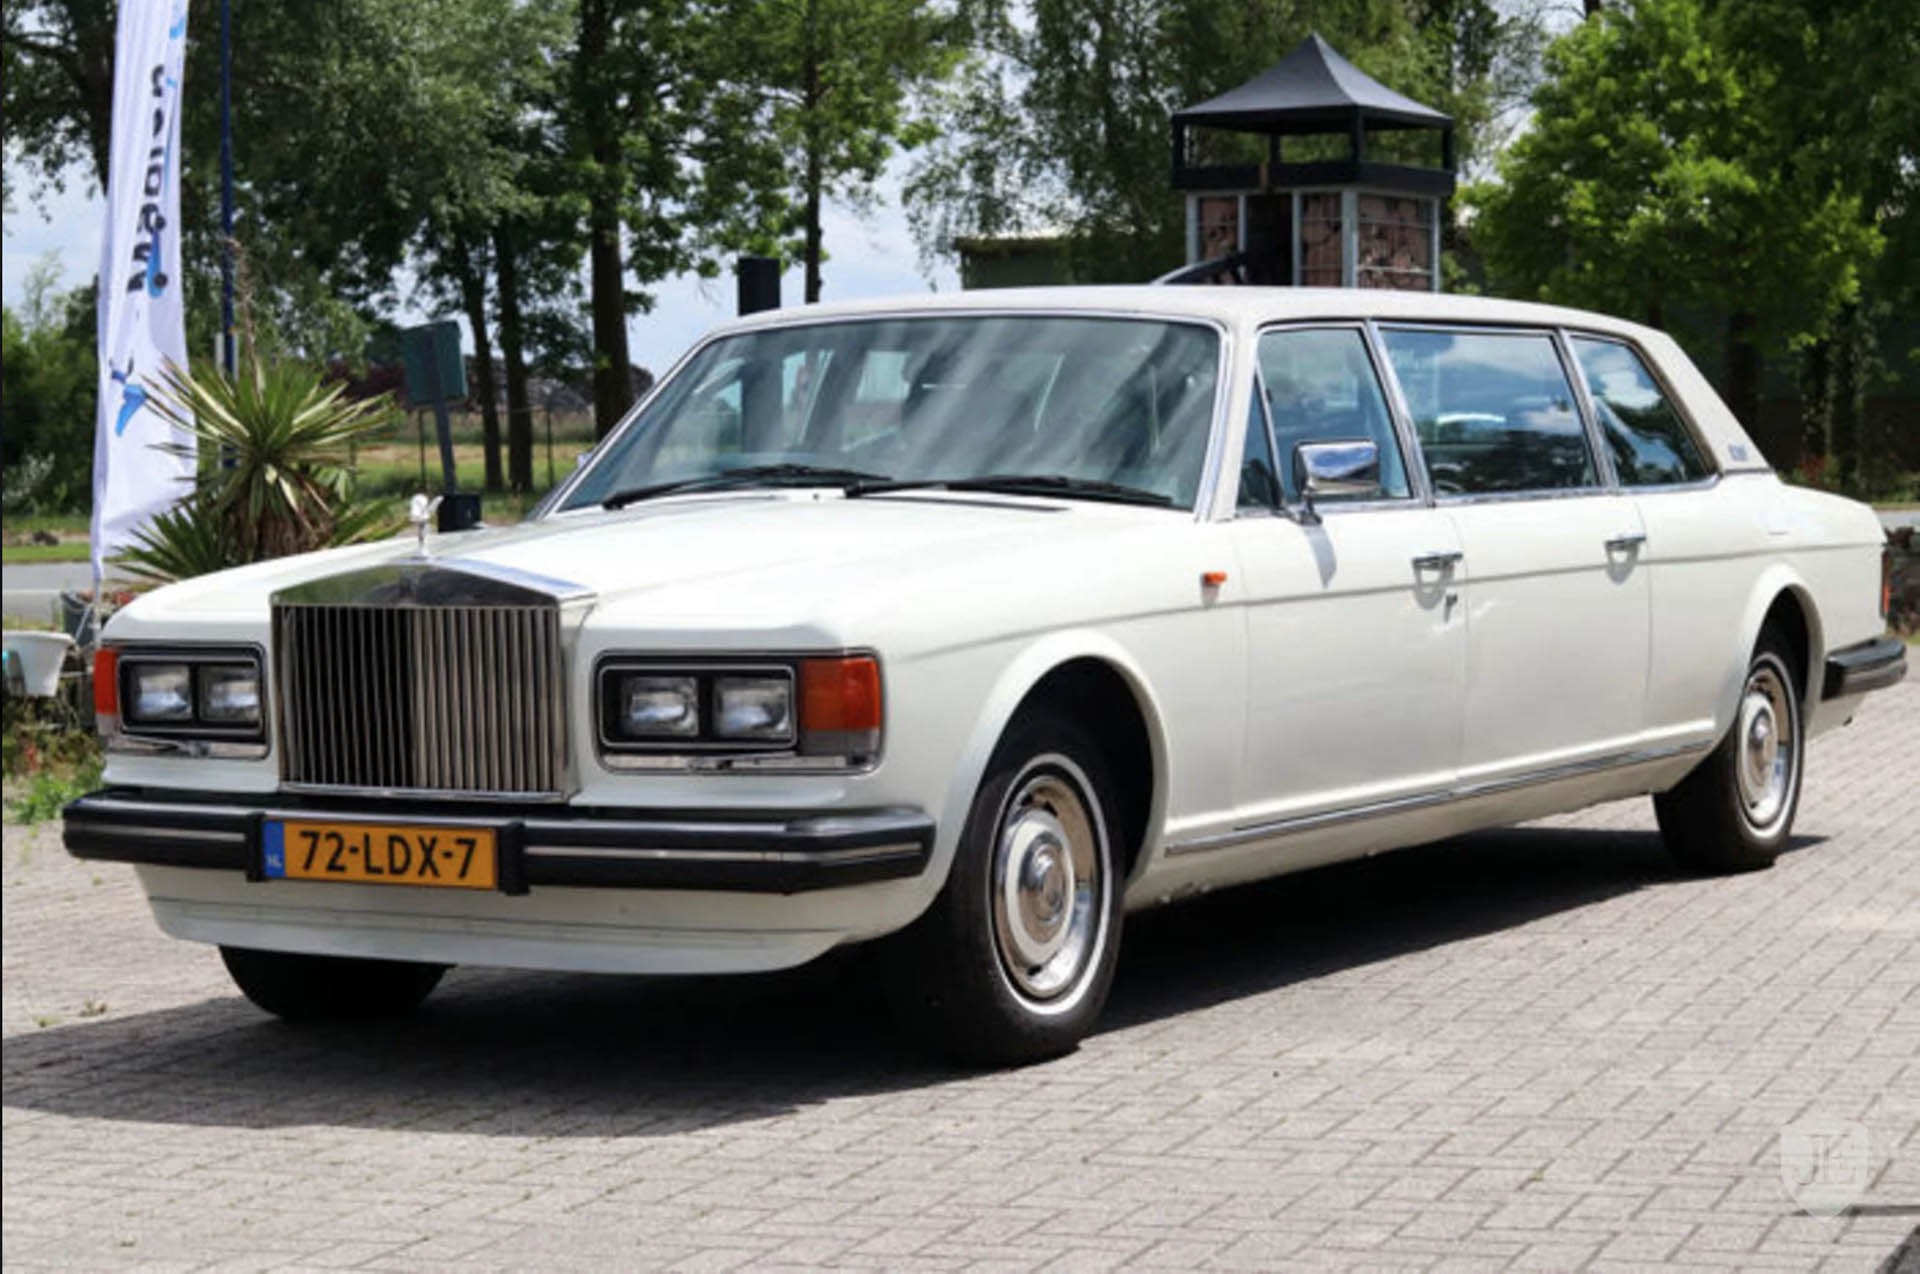 Mua một chiếc Rolls Royce Phantom cũ nộp 154 tỷ đồng tiền thuế